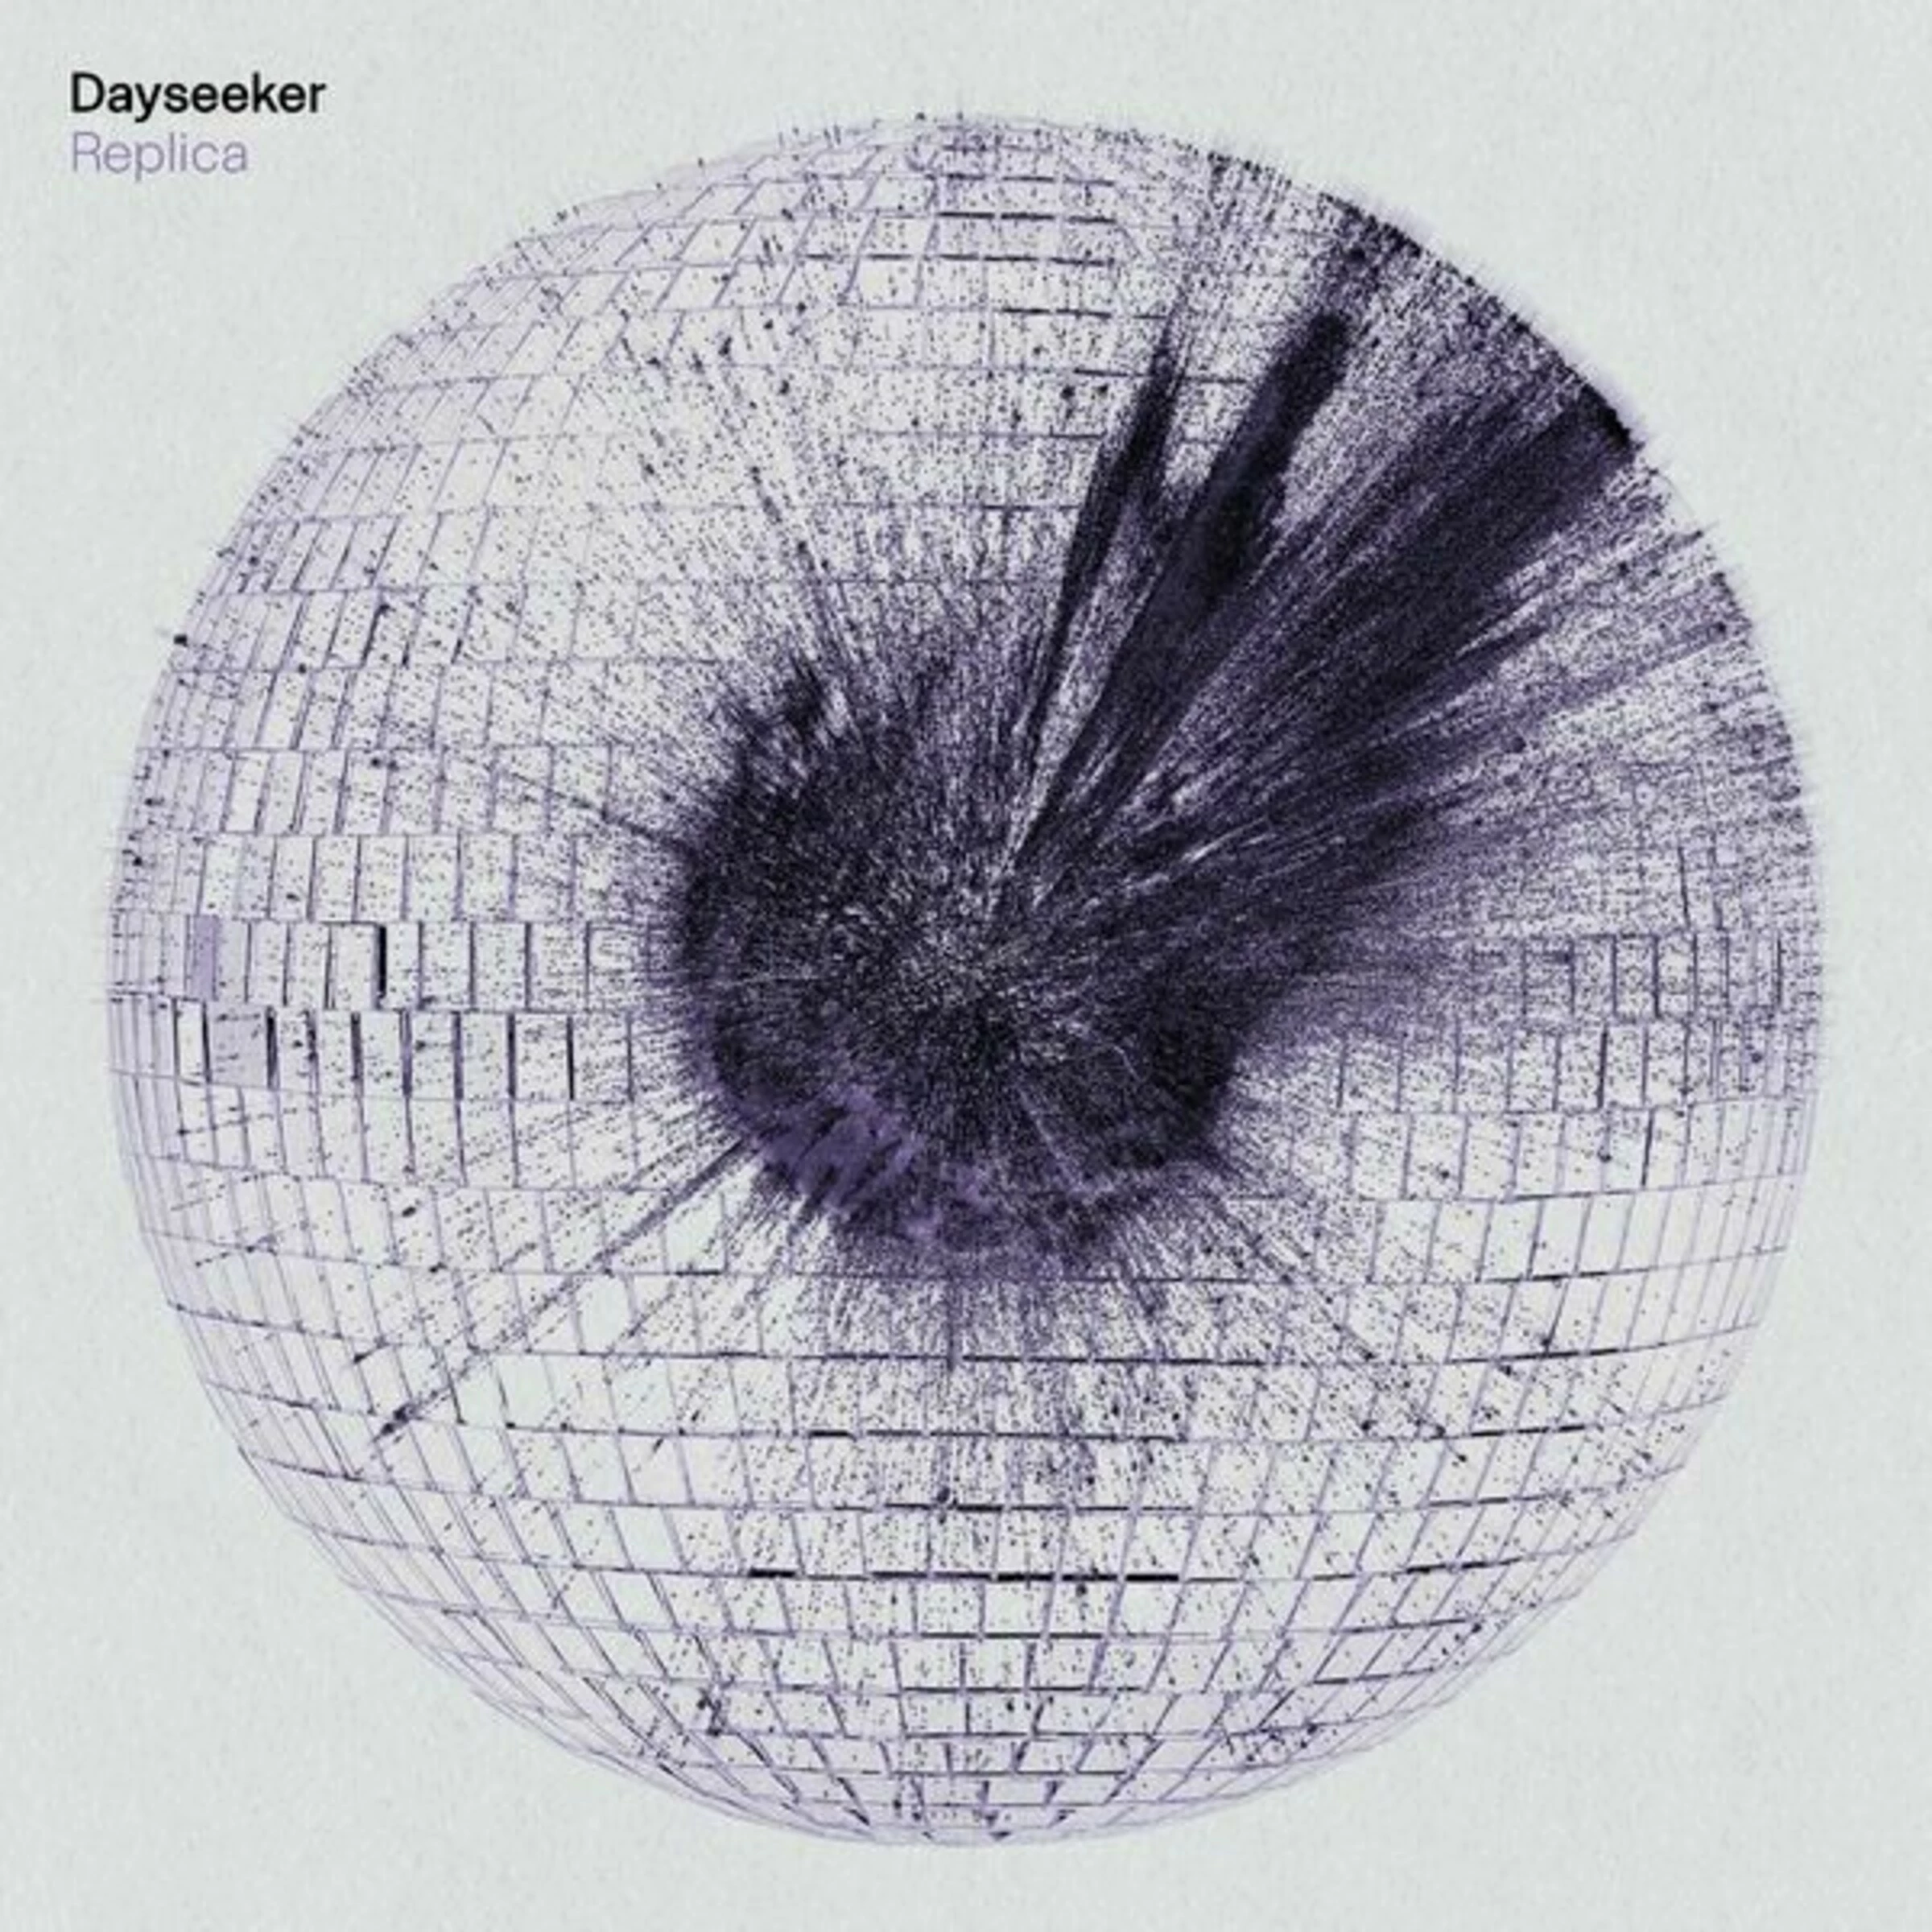 DAYSEEKER - Replica [CD]